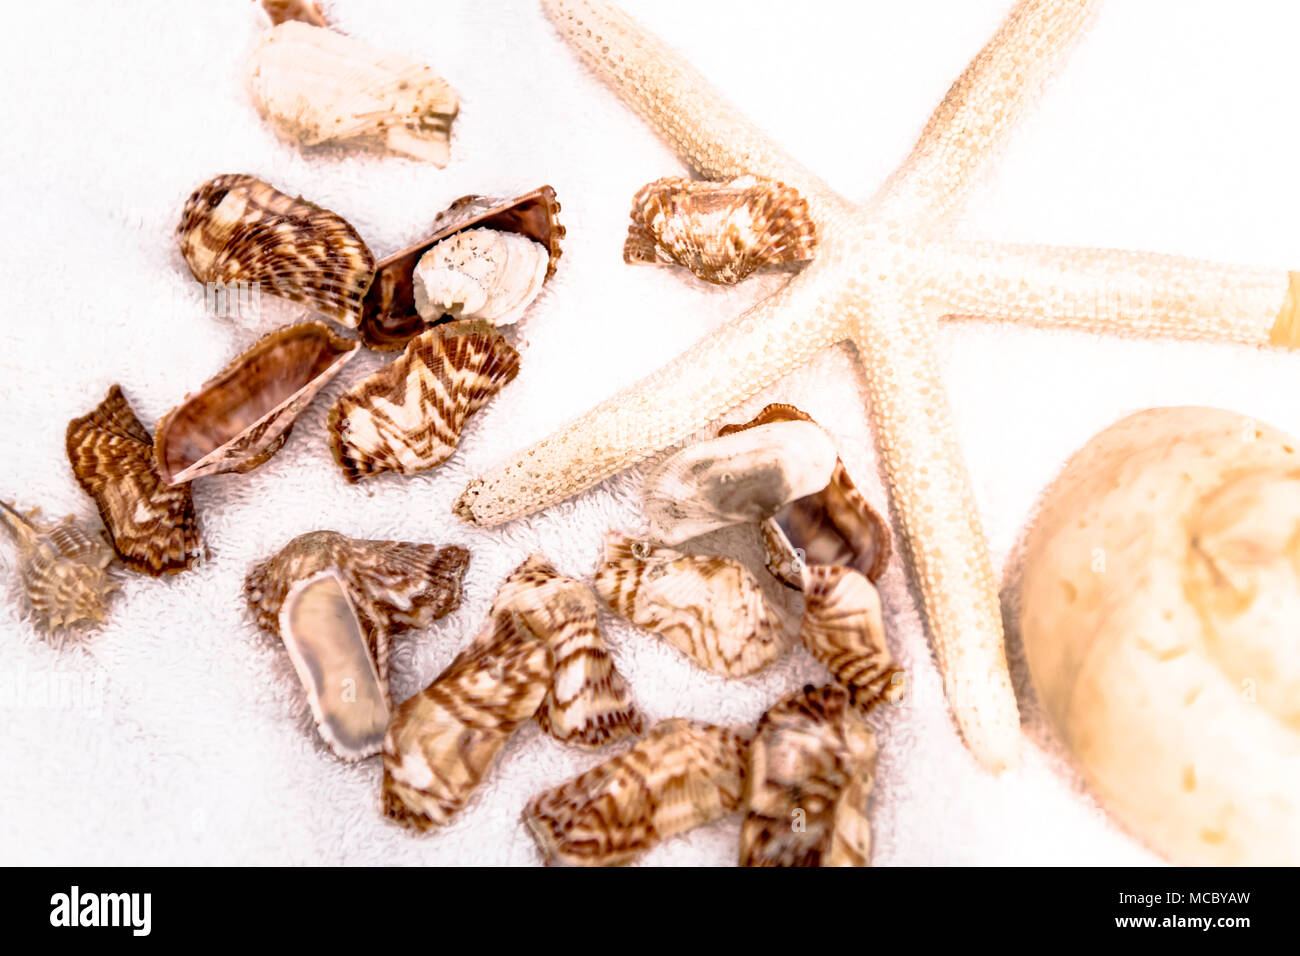 Muschelschalen und Seestern; cockles and starfish Stock Photo